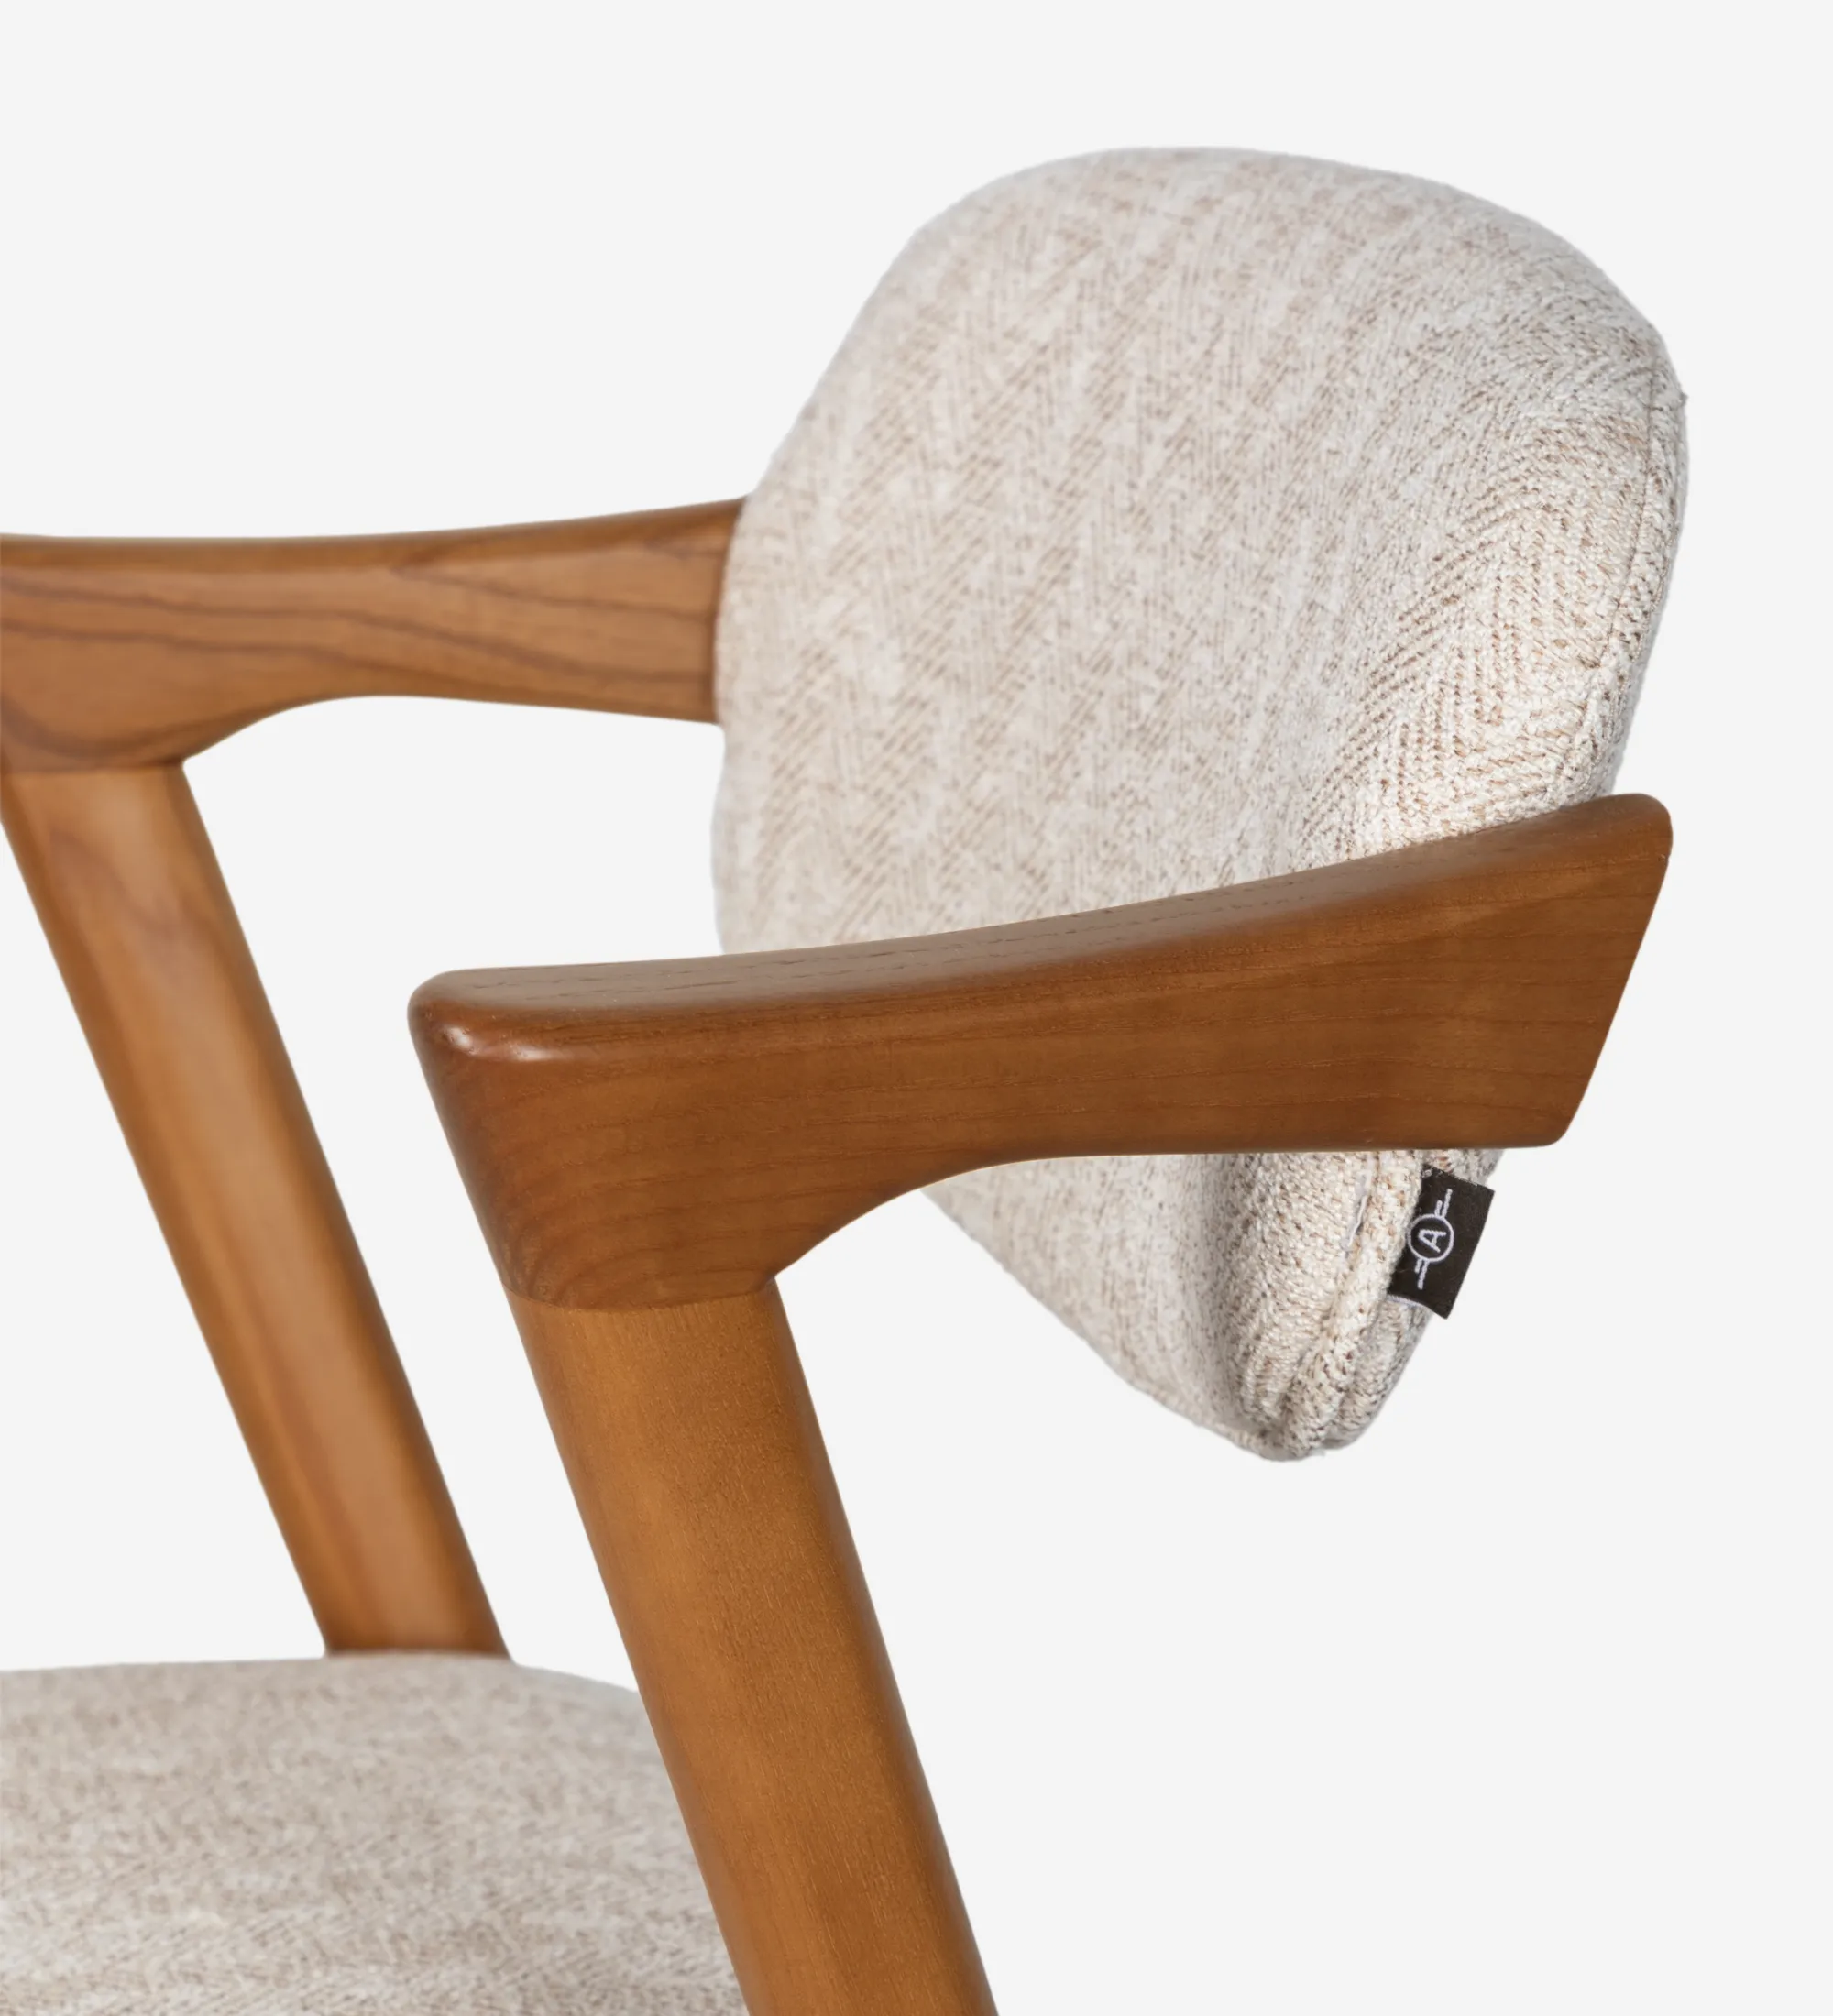 Taburete en madera de fresno color miel, con asiento y respaldo tapizado en tejido.